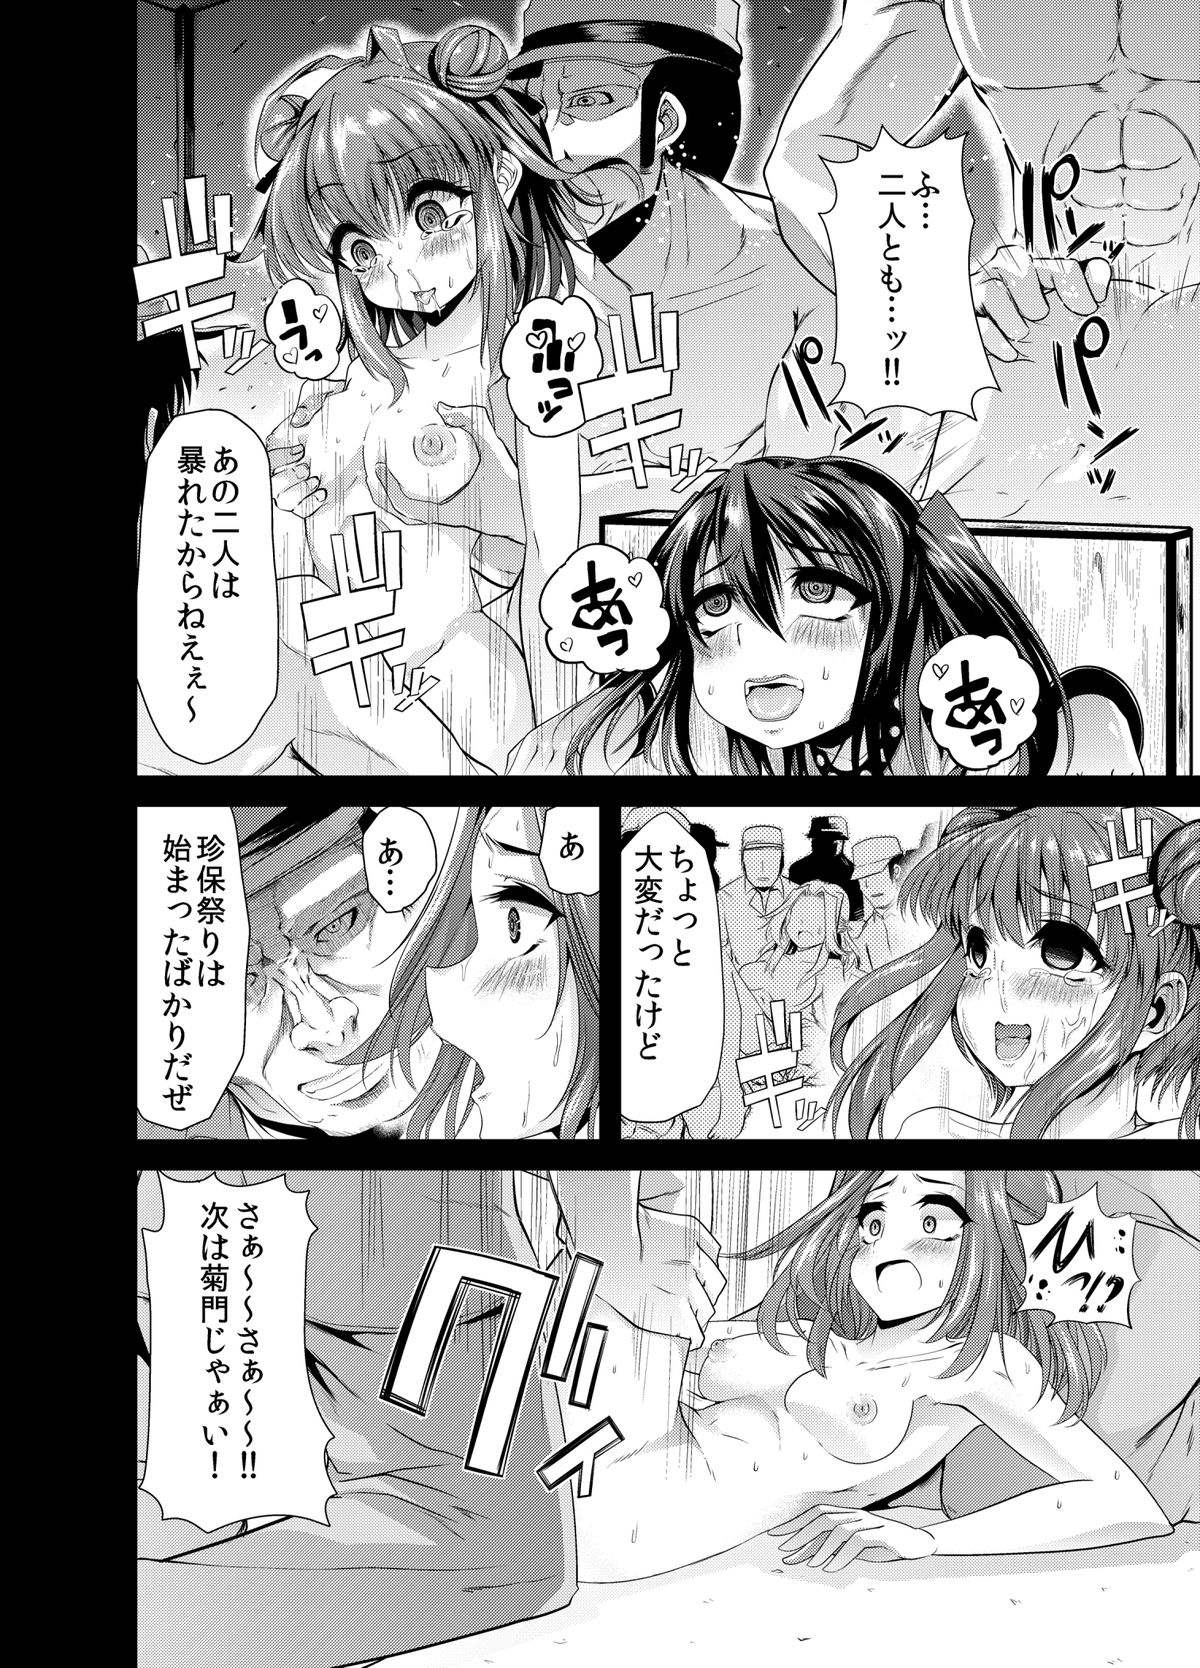 DL_manga_11 j